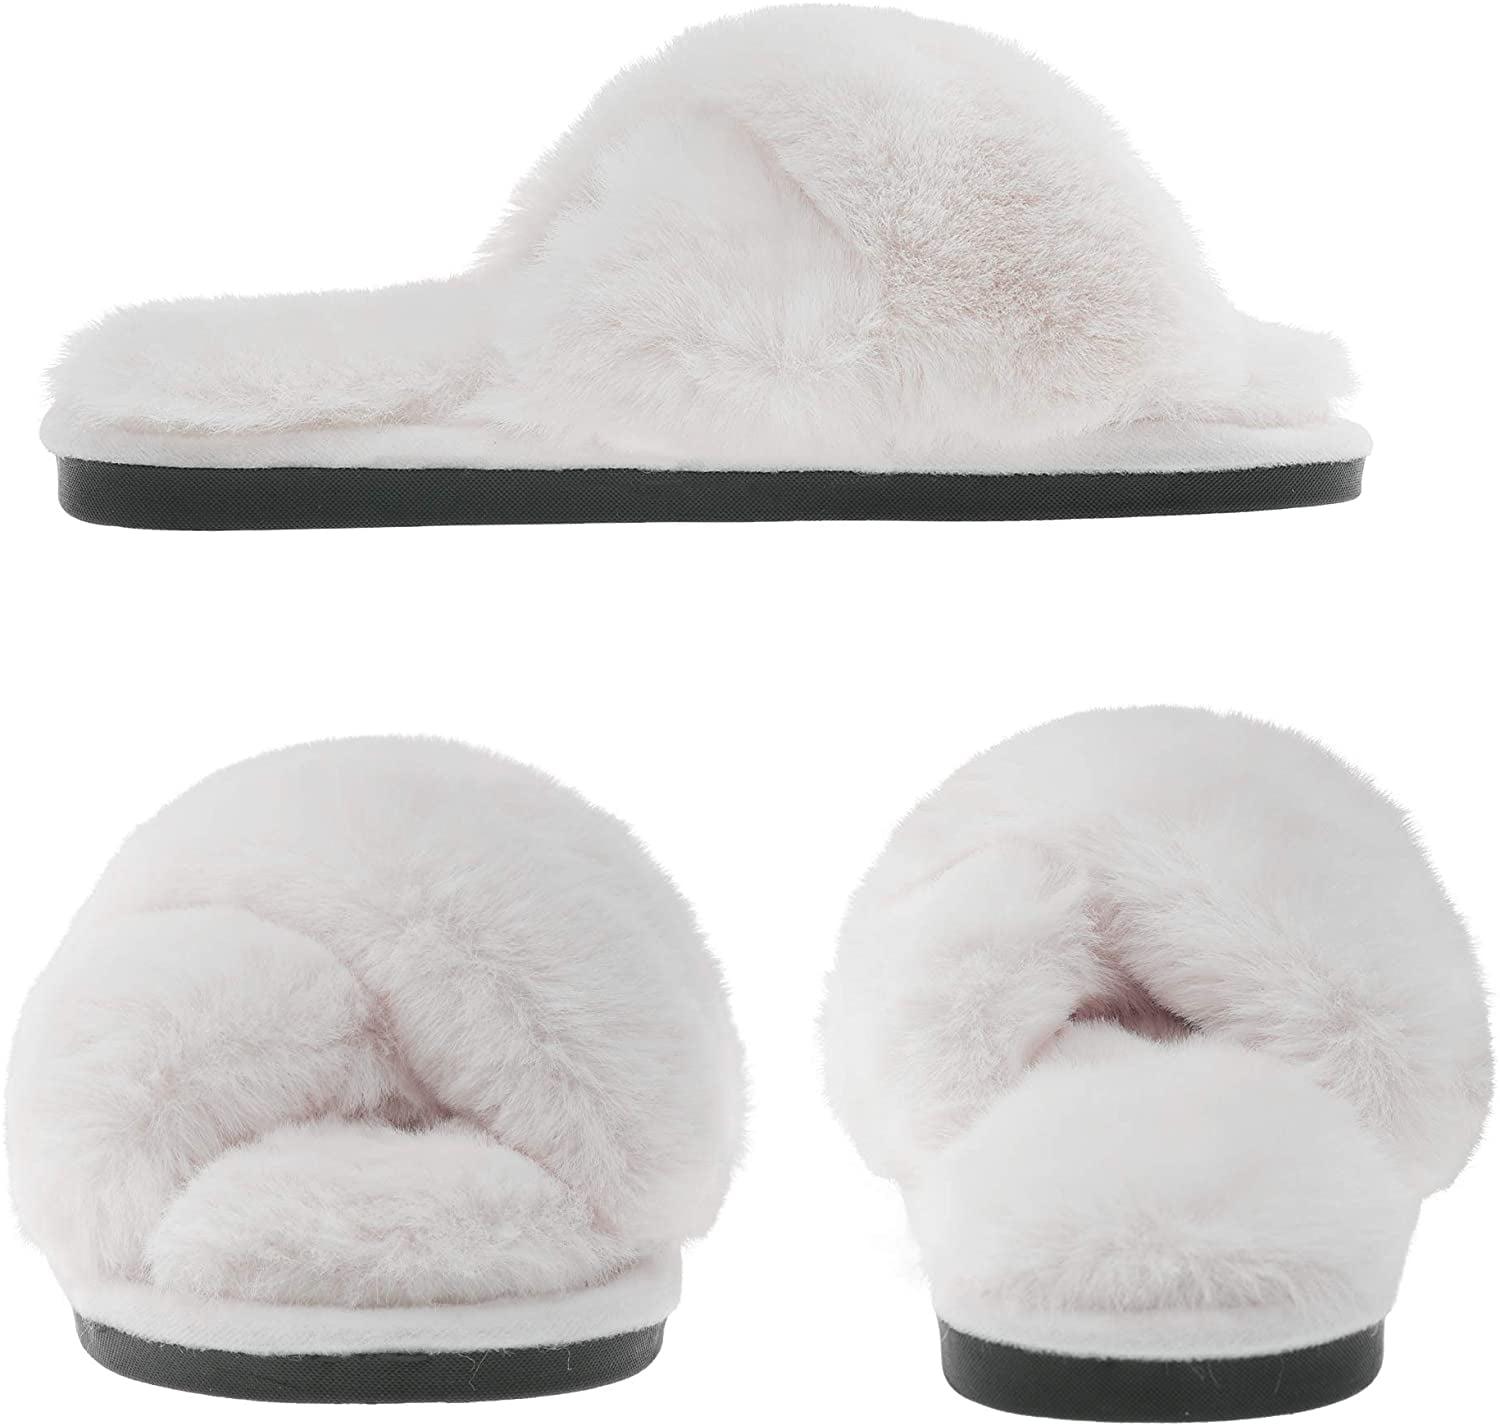 plush house slippers Memory Foam Anti-Slip Indoor Outdoor Slipper Slippers for Women Fluffy Furry Fur House Shoes Womens fuzzy slippers 